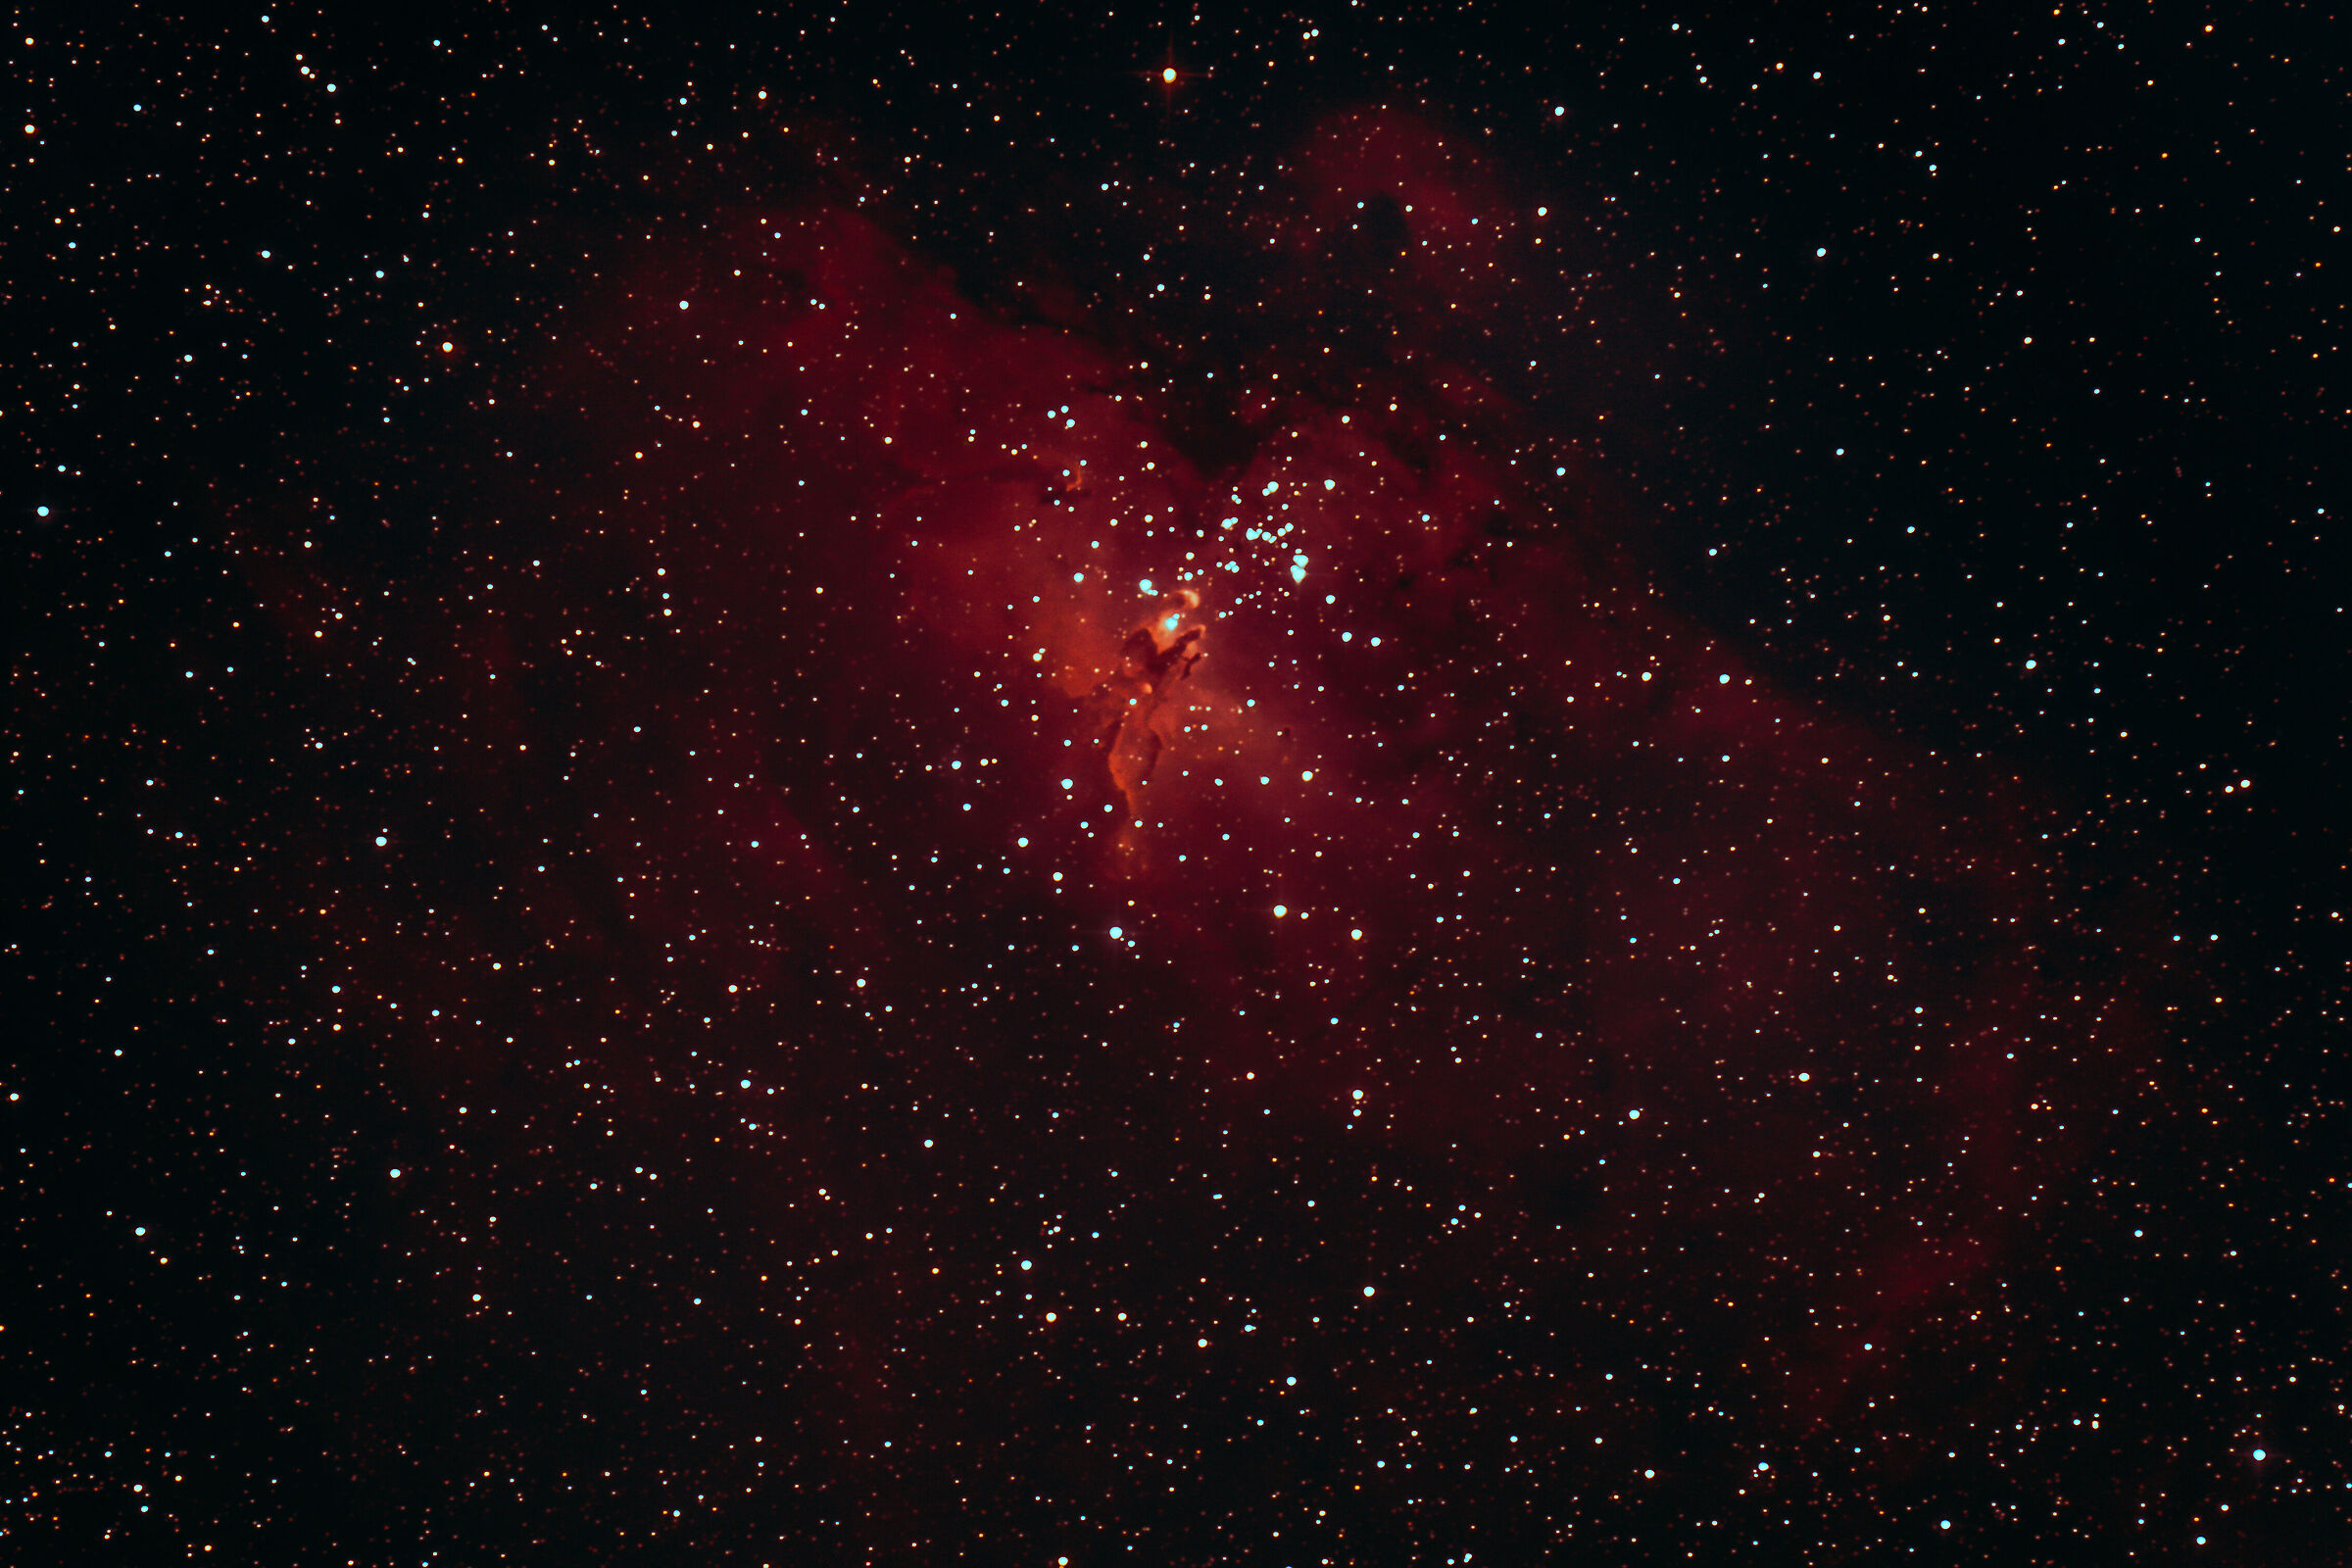 M16 -The Eagle Nebula...